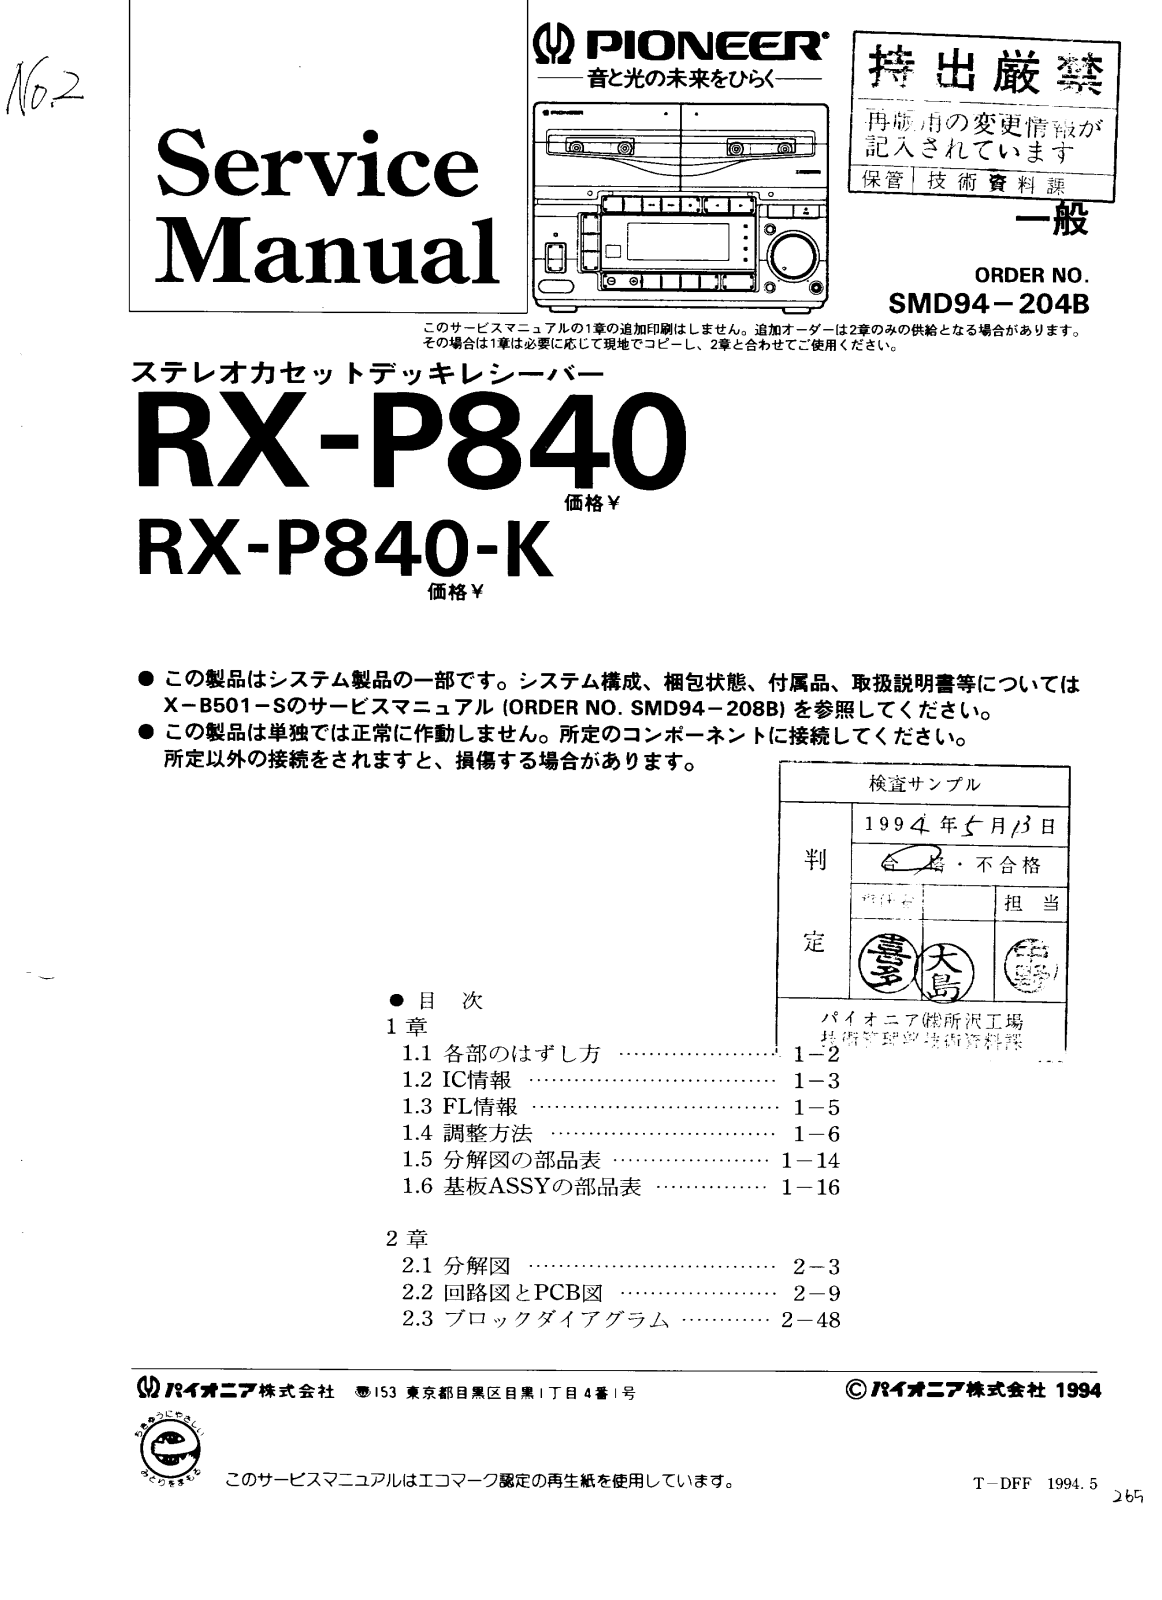 Pioneer RX-P840, RX-P840-К Service Manual